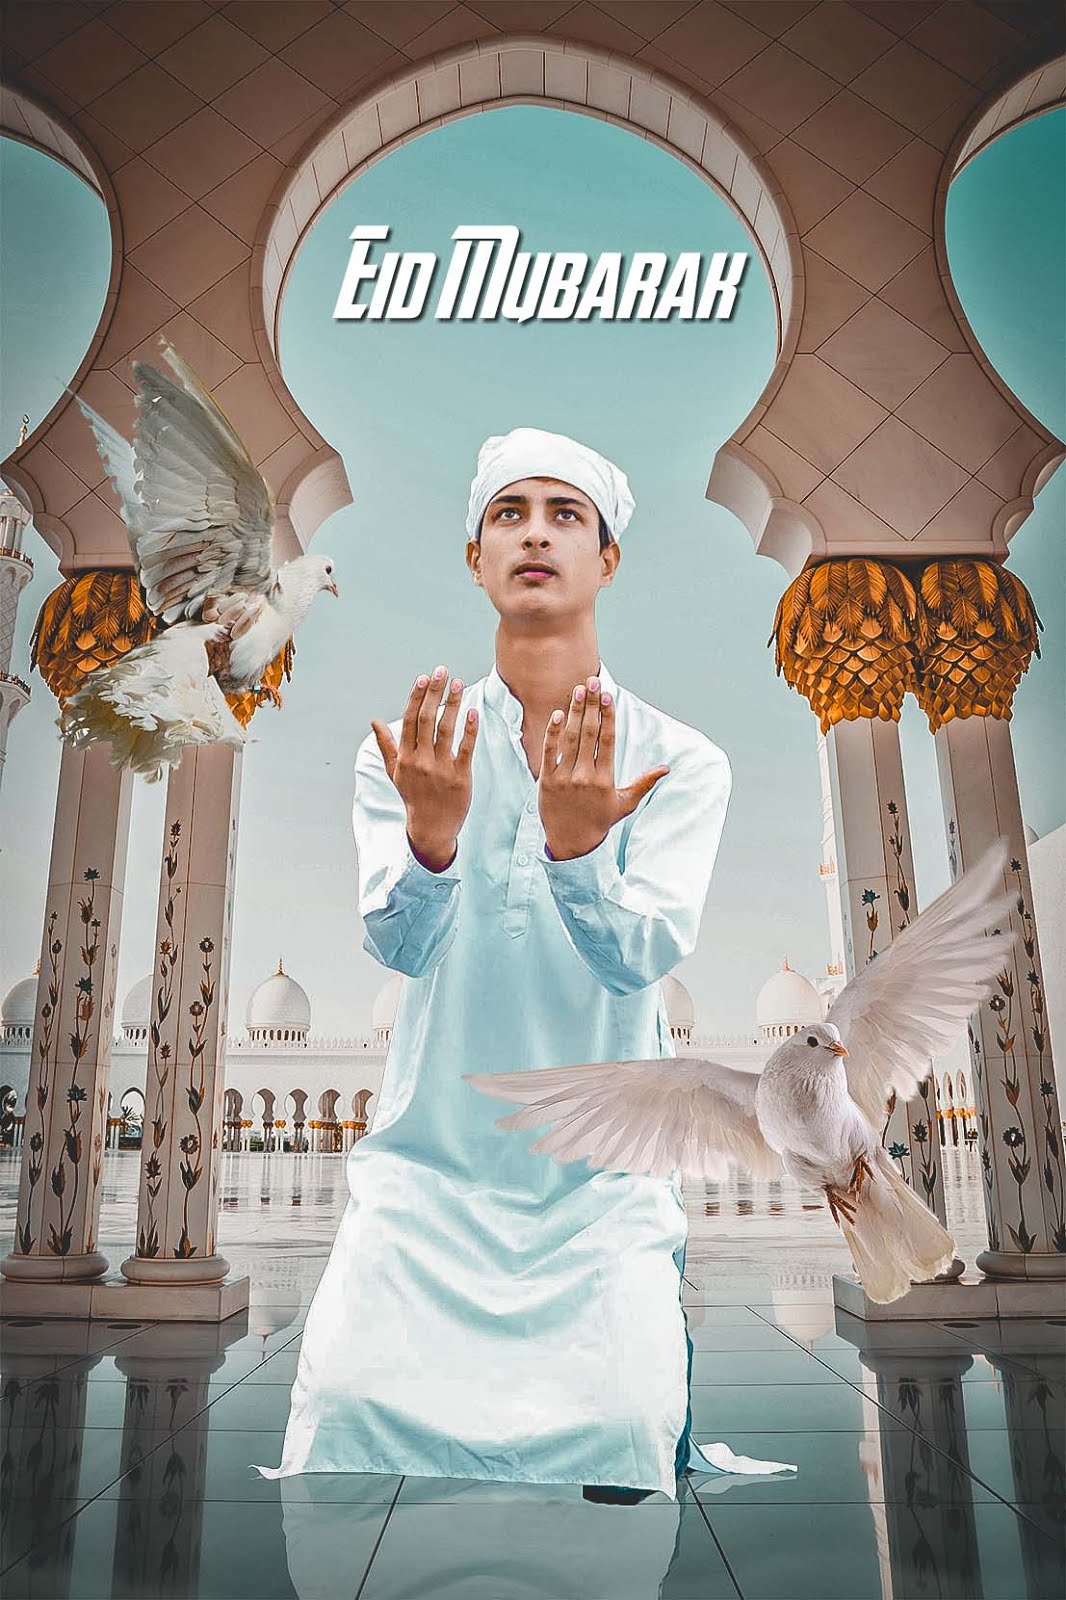 Eid mubarak photo editing background png